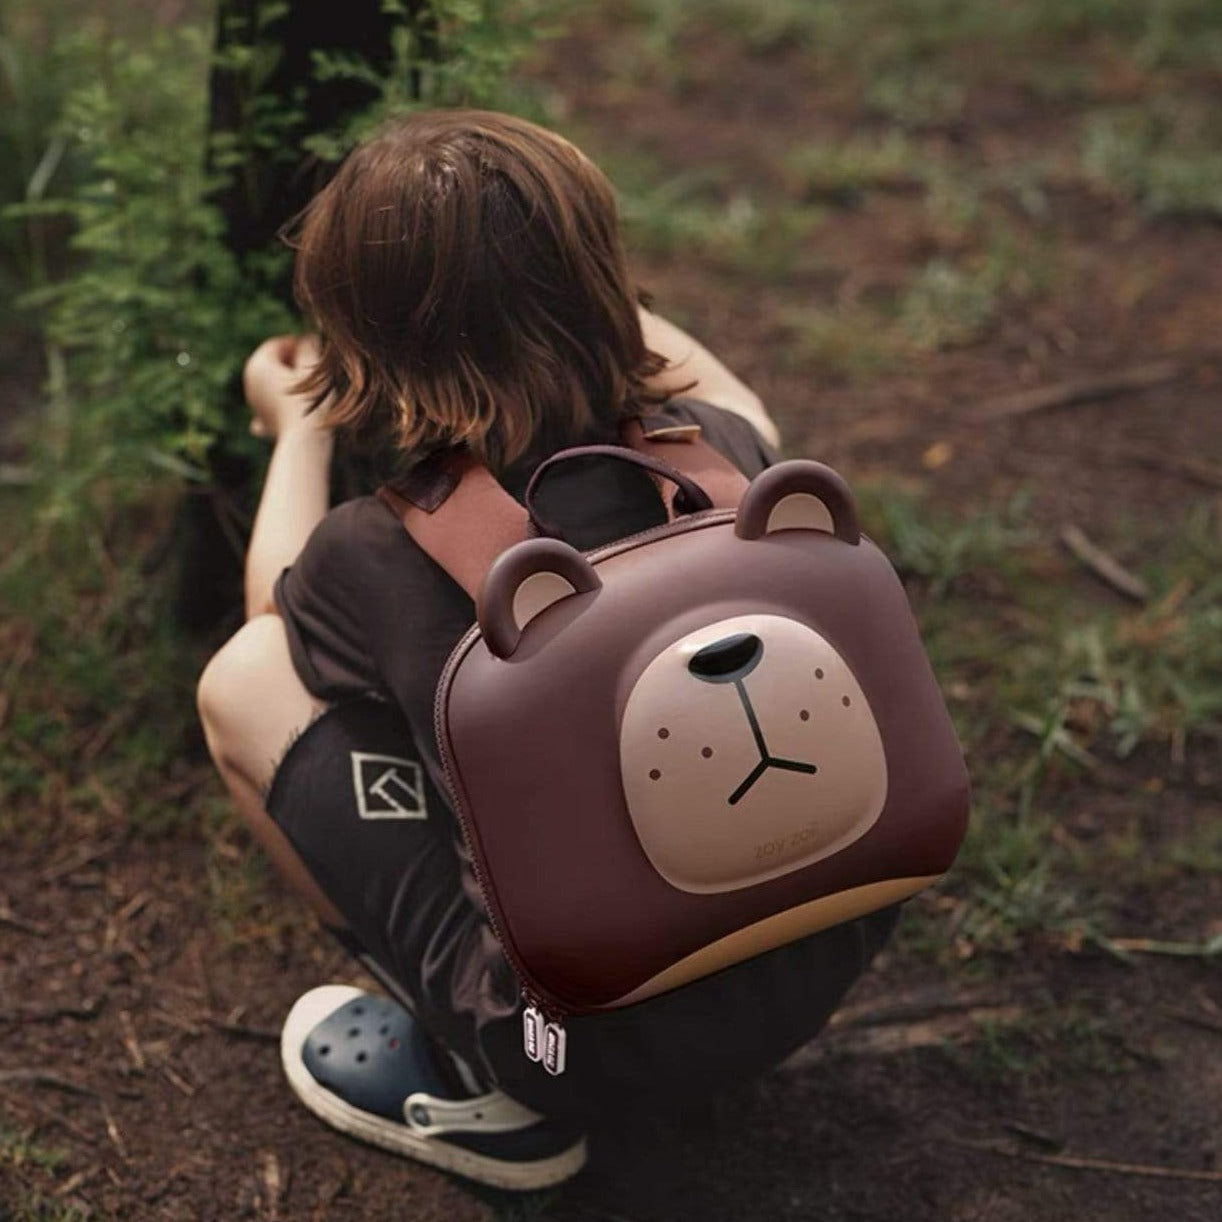 HELMS STORE Backpacks Premium 3D Character Backpack for Kids - Bear